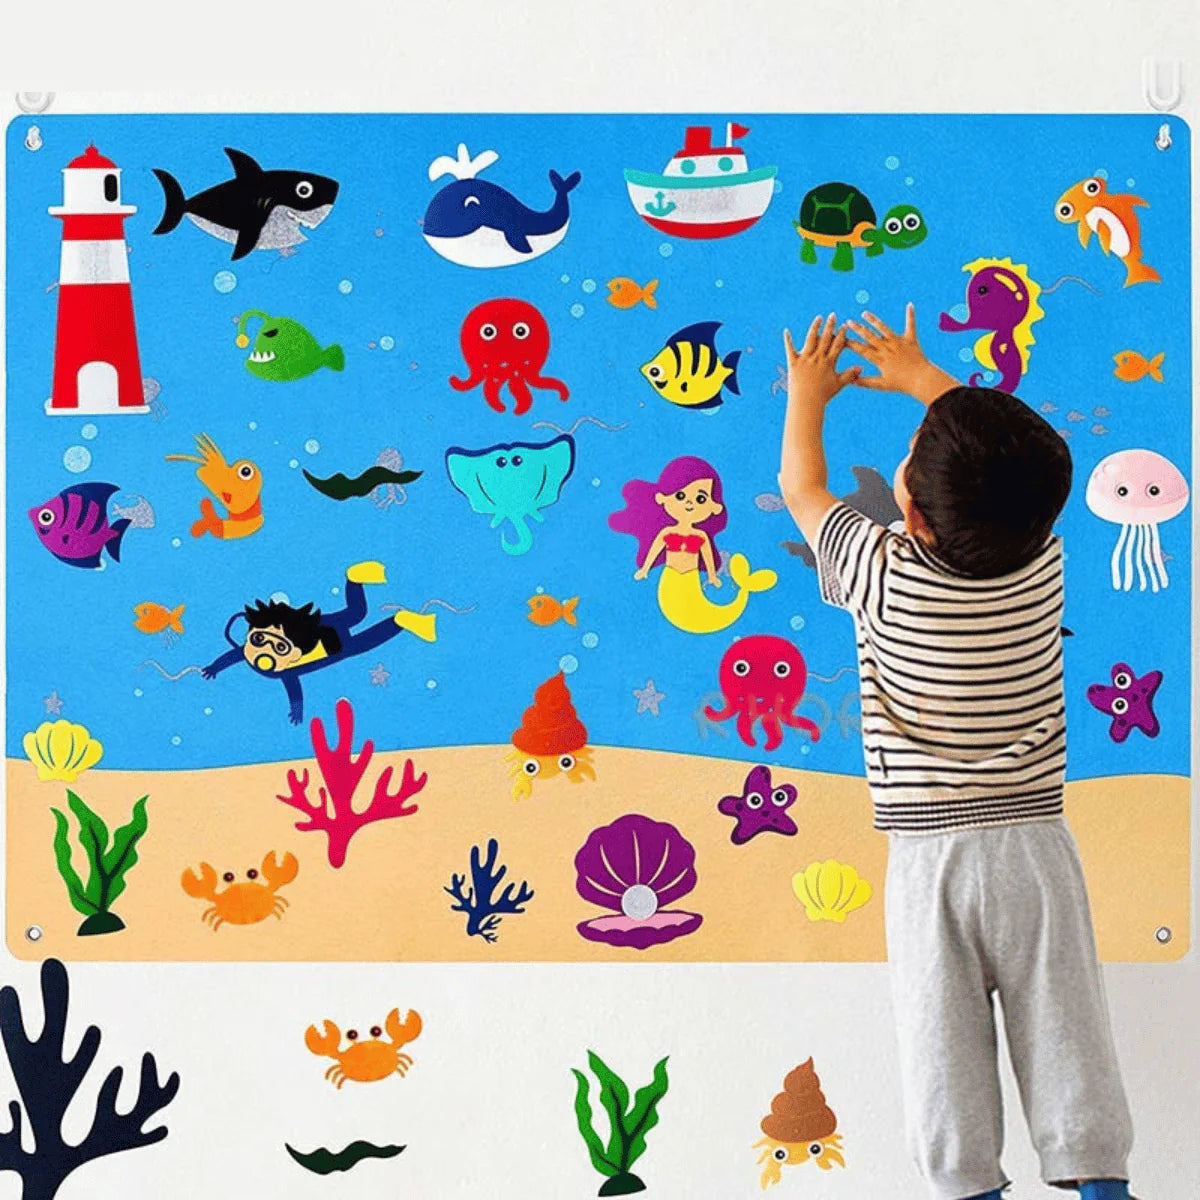 KiddoBoard™ | Interactief bord voor kinderen